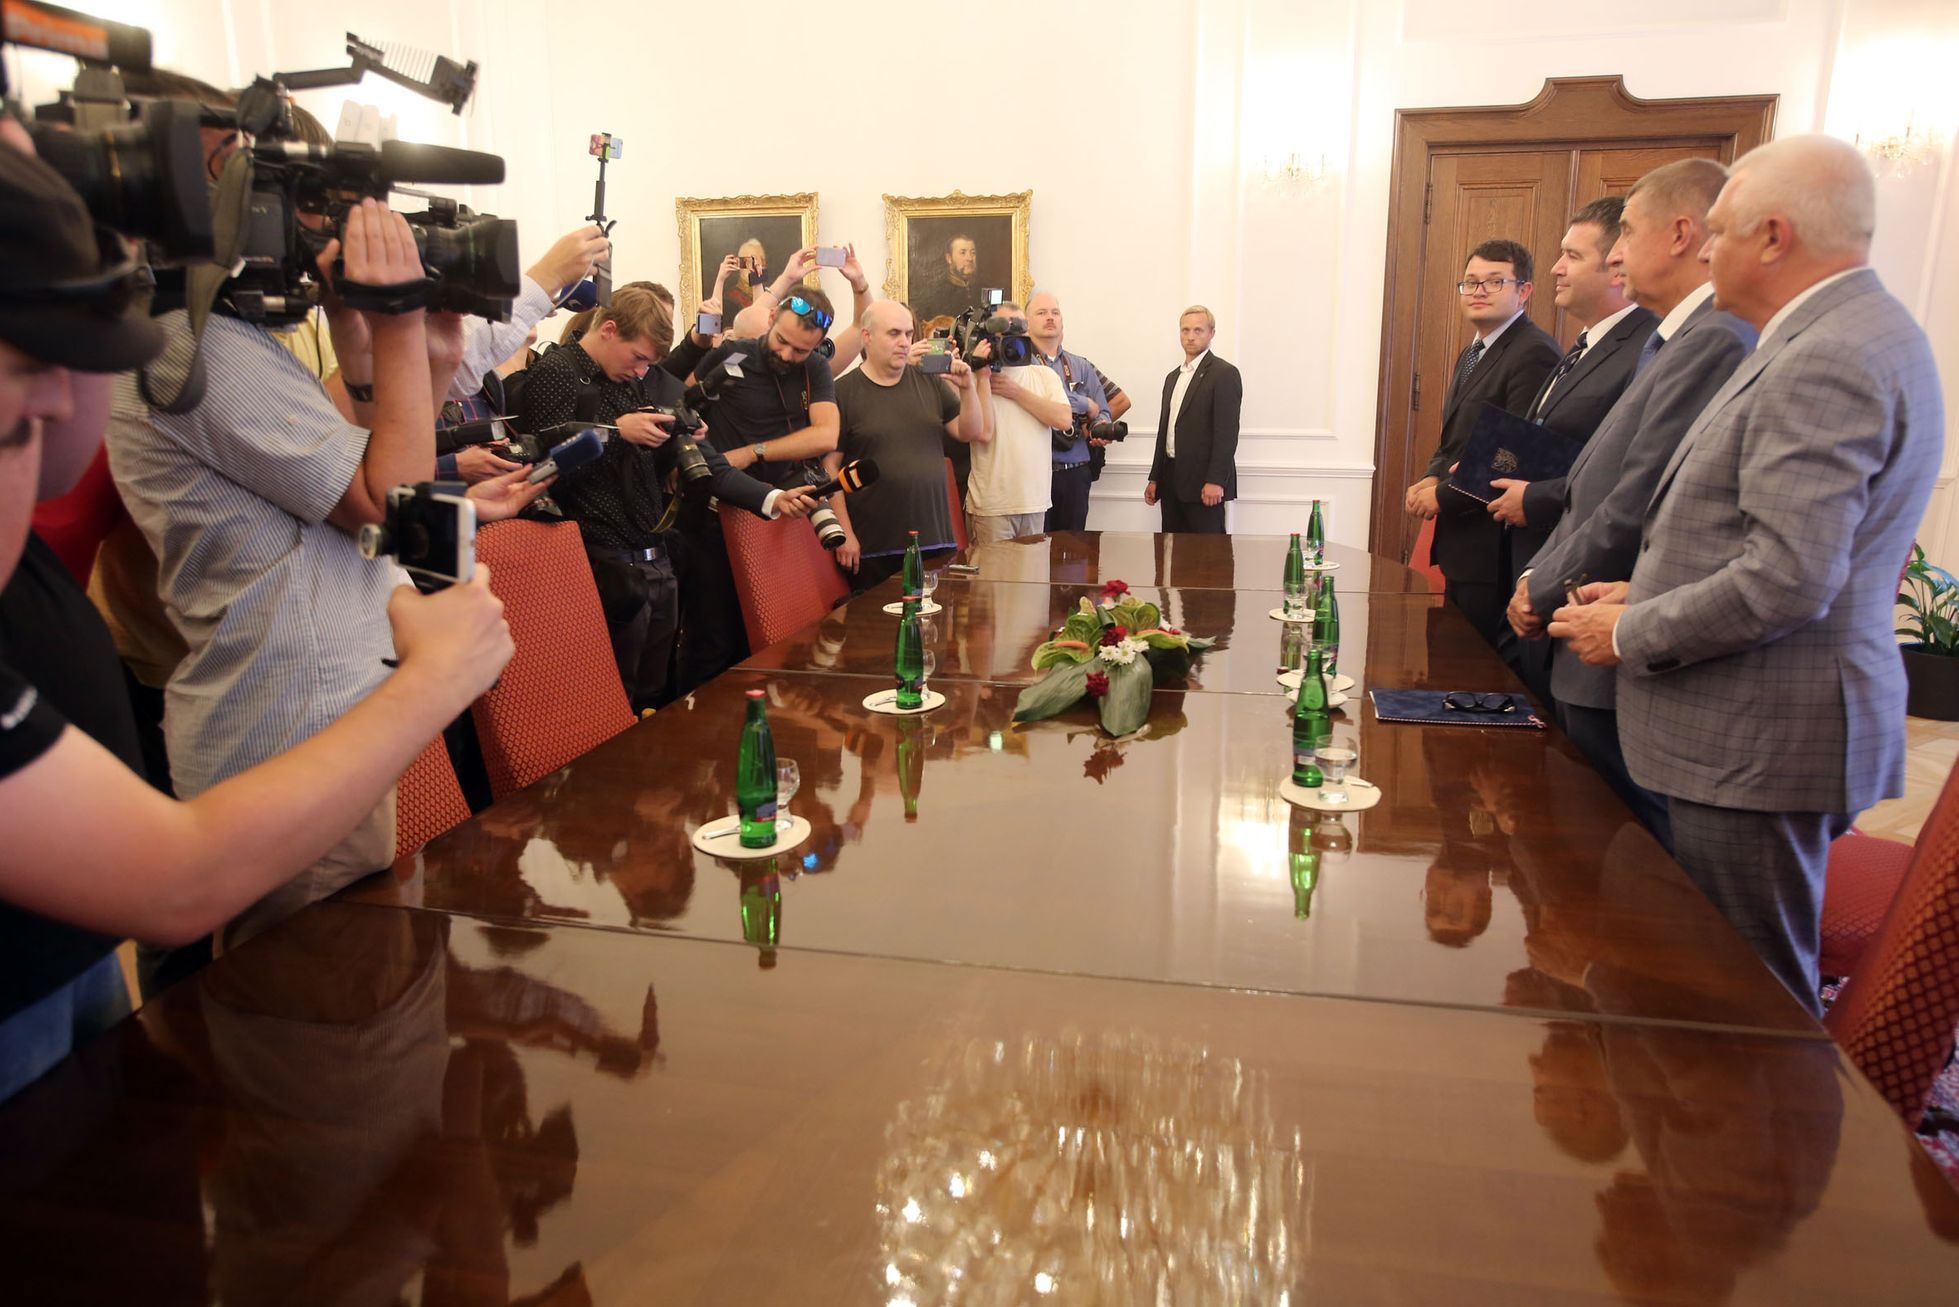 Podpis koaliční smlouvy mezi ANO a ČSSD